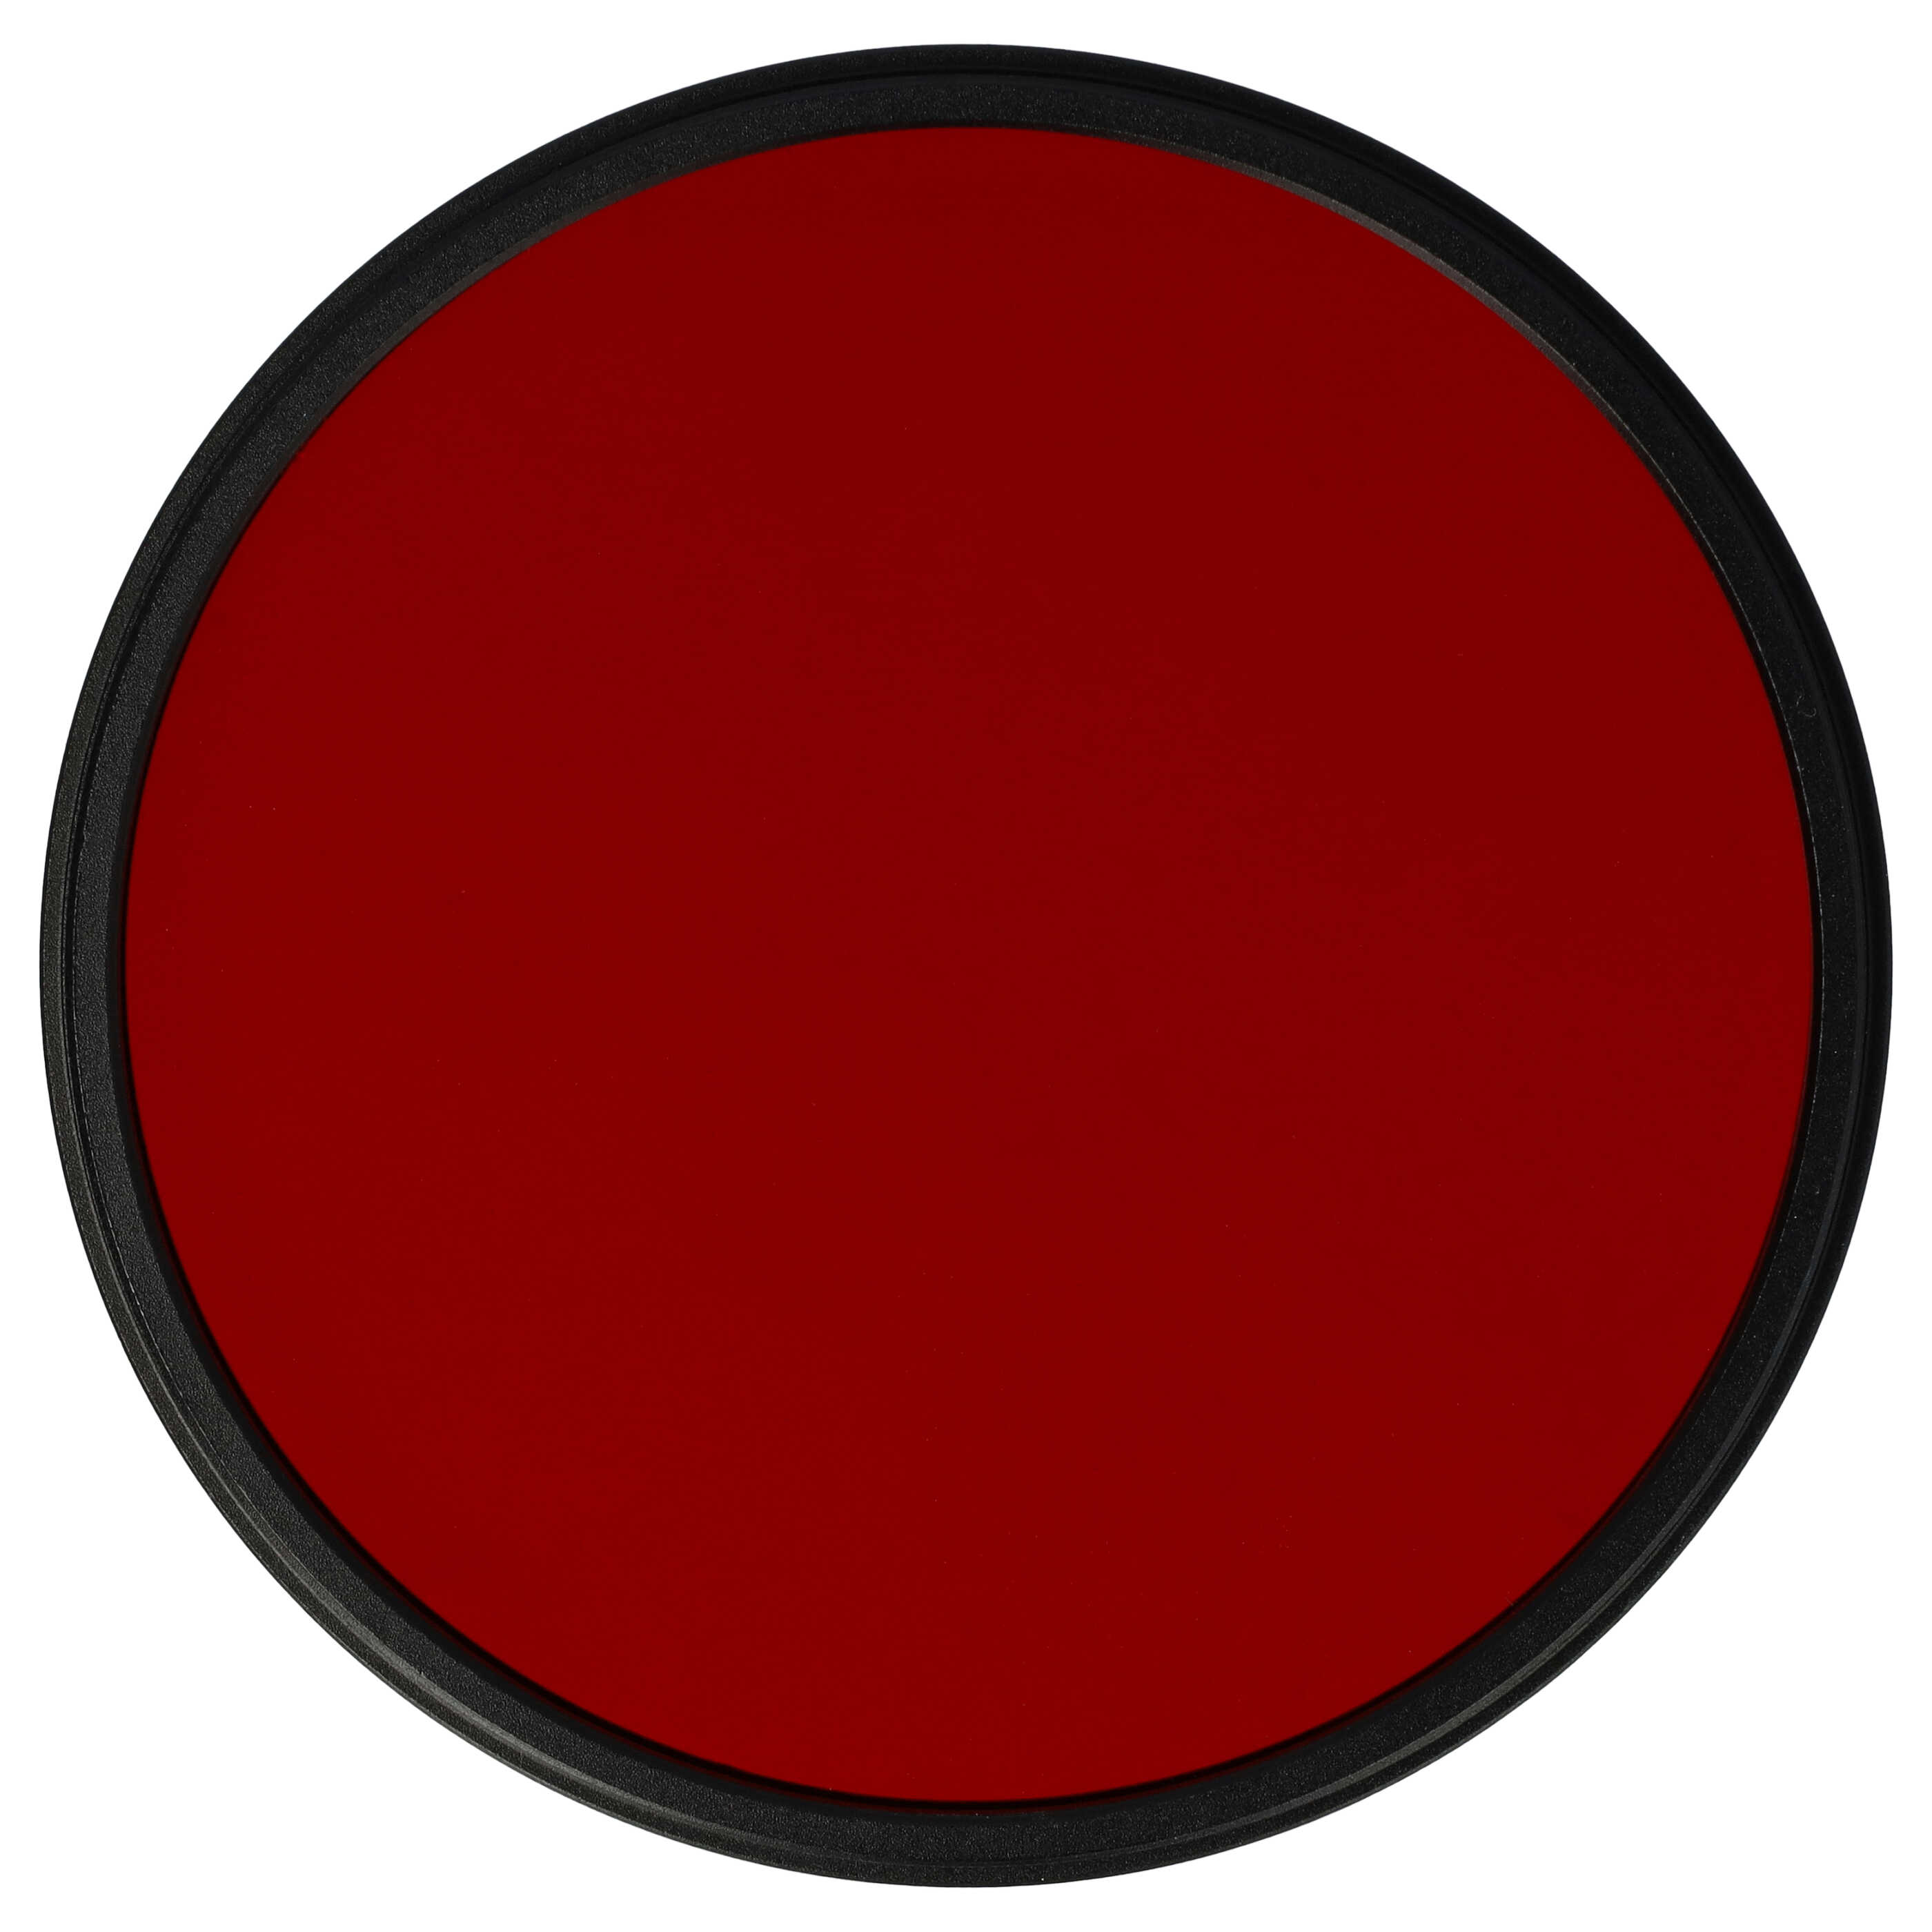 Filtro colorato per obiettivi fotocamera con filettatura da 77 mm - filtro rosso